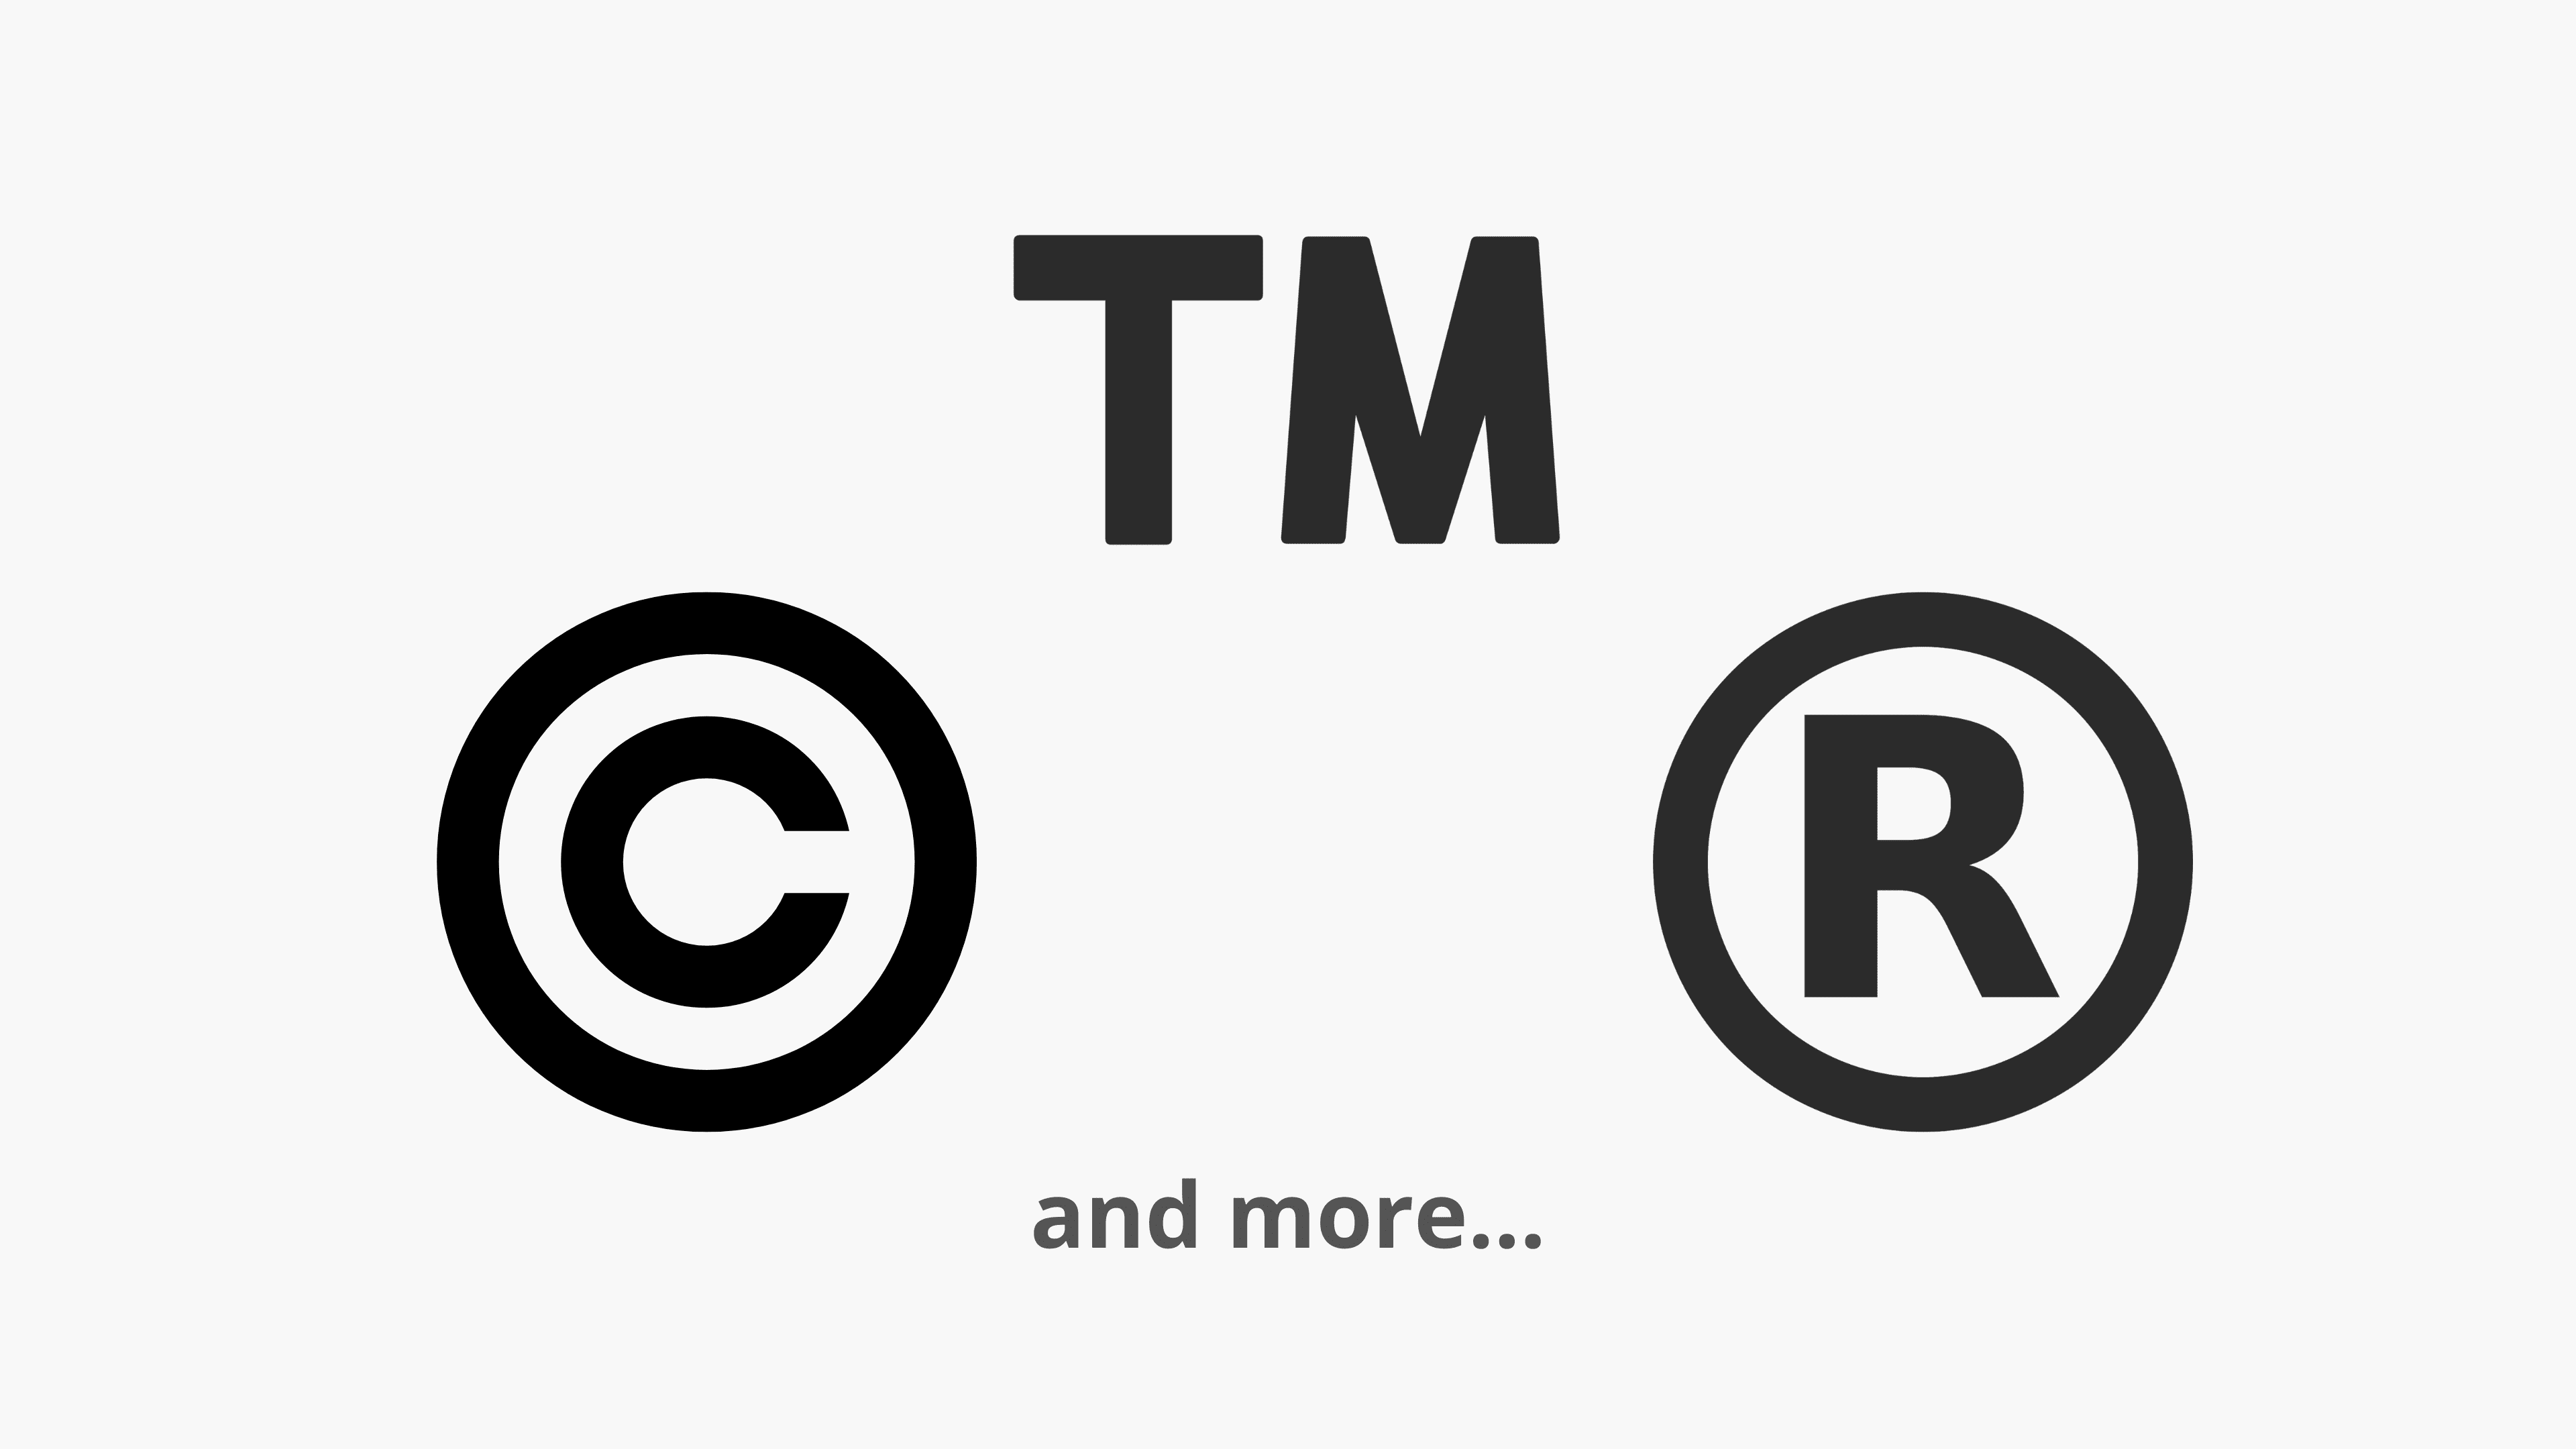 Copyright, marca comercial y símbolos registrados sobre un fondo claro